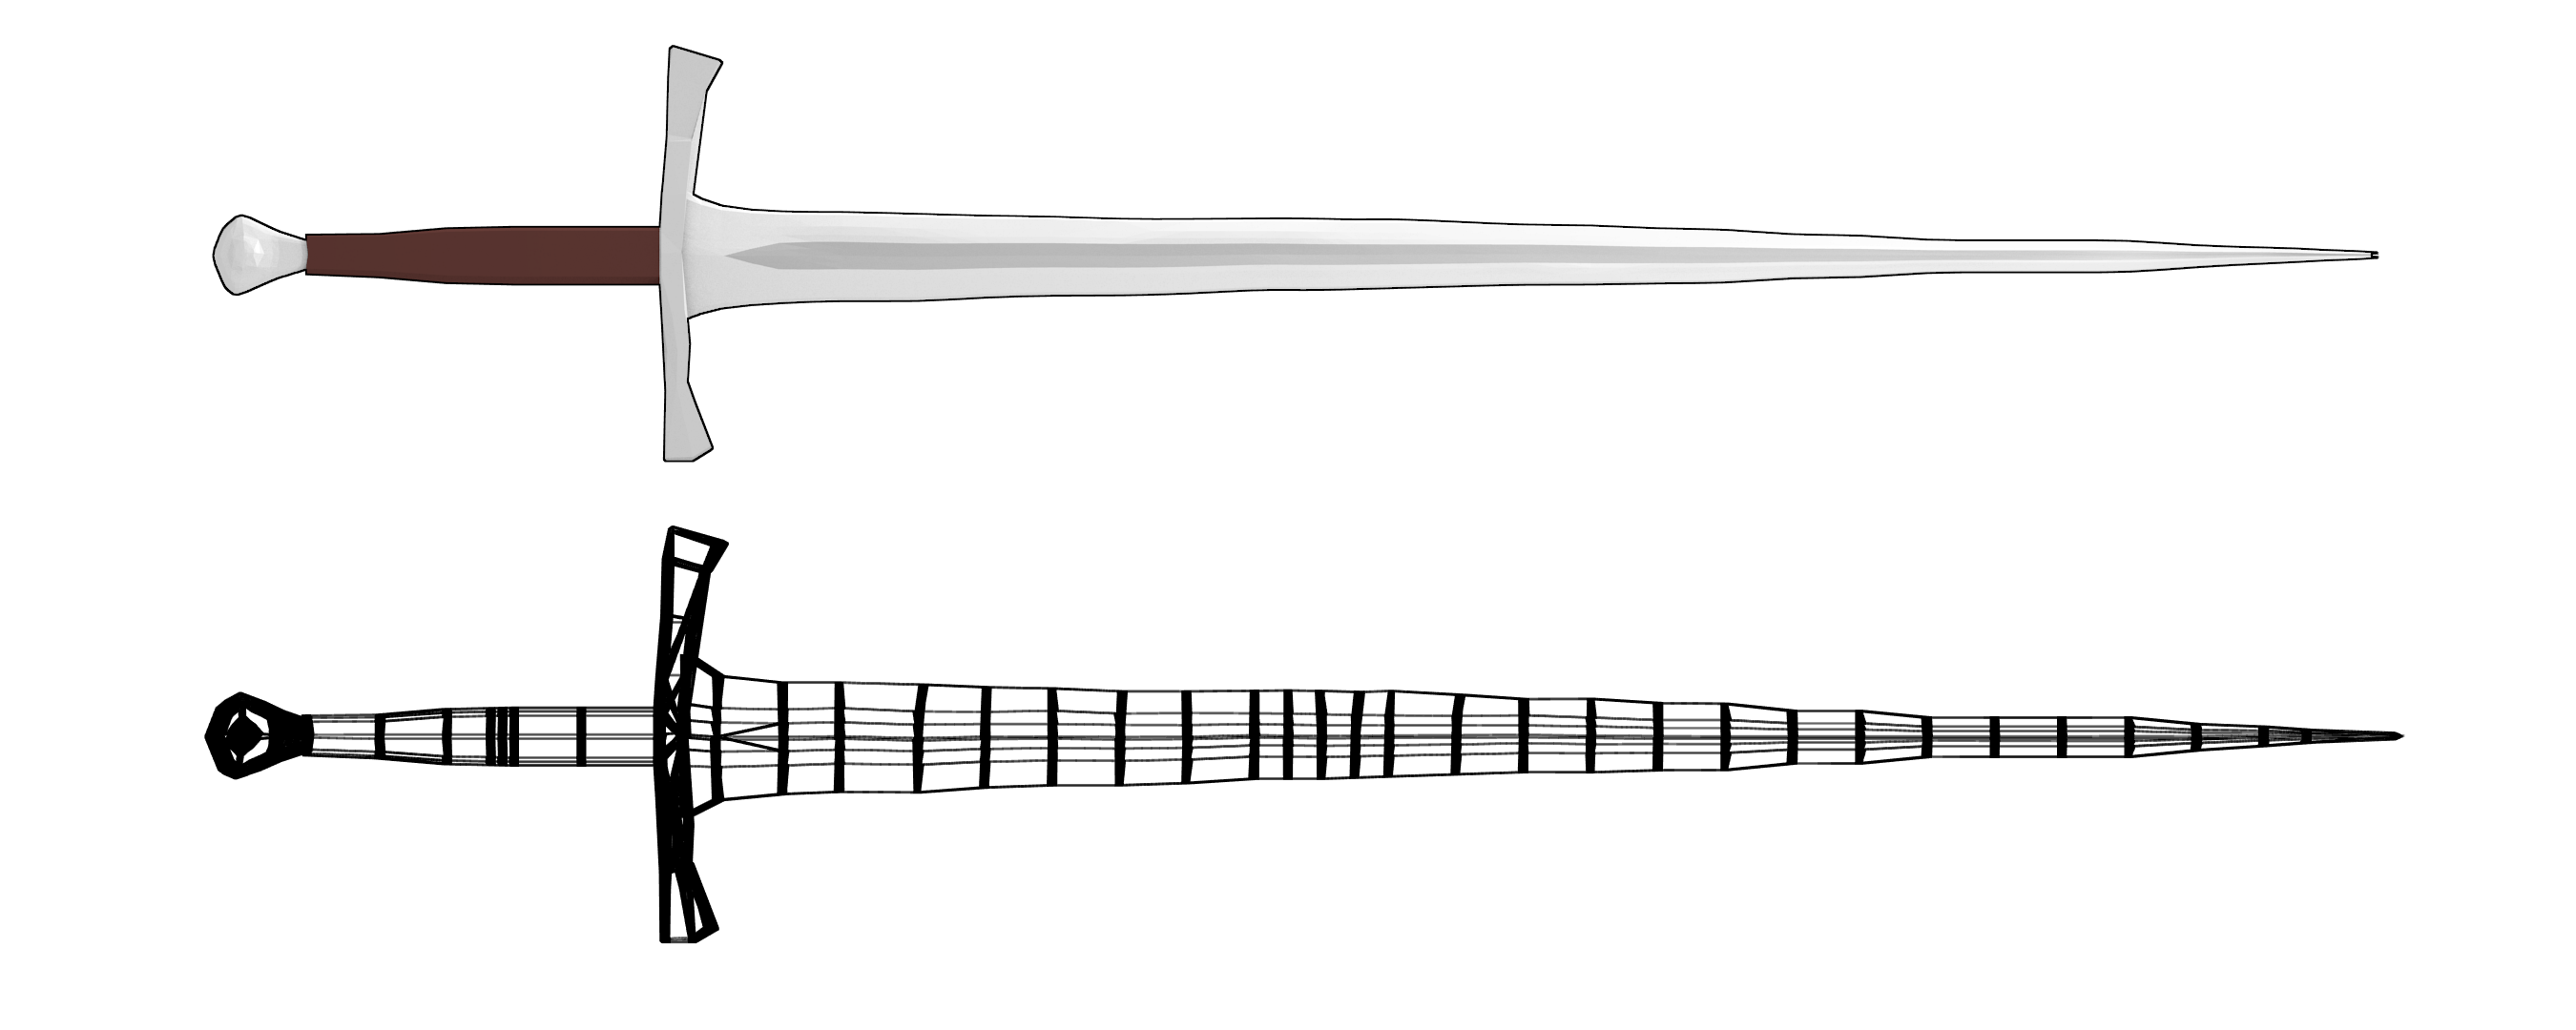 sword2.png